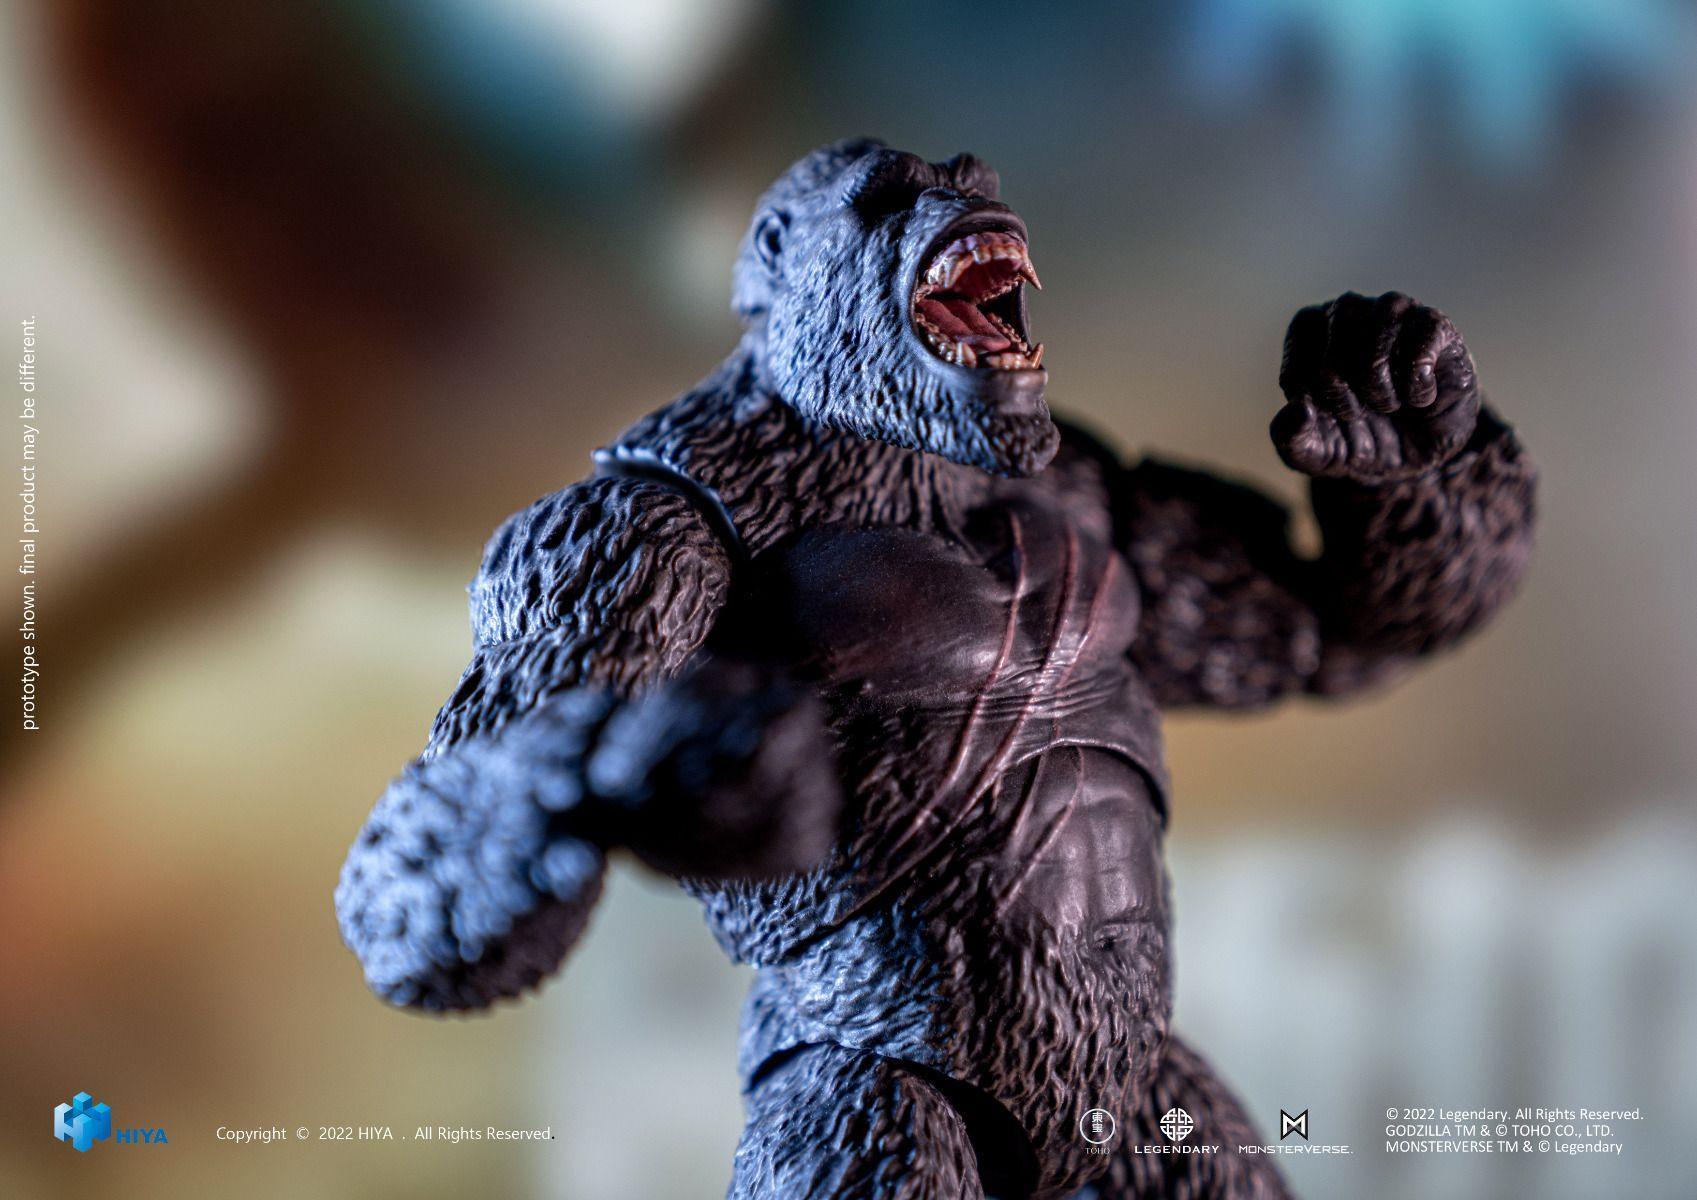 HIYA - King Kong Action Figure